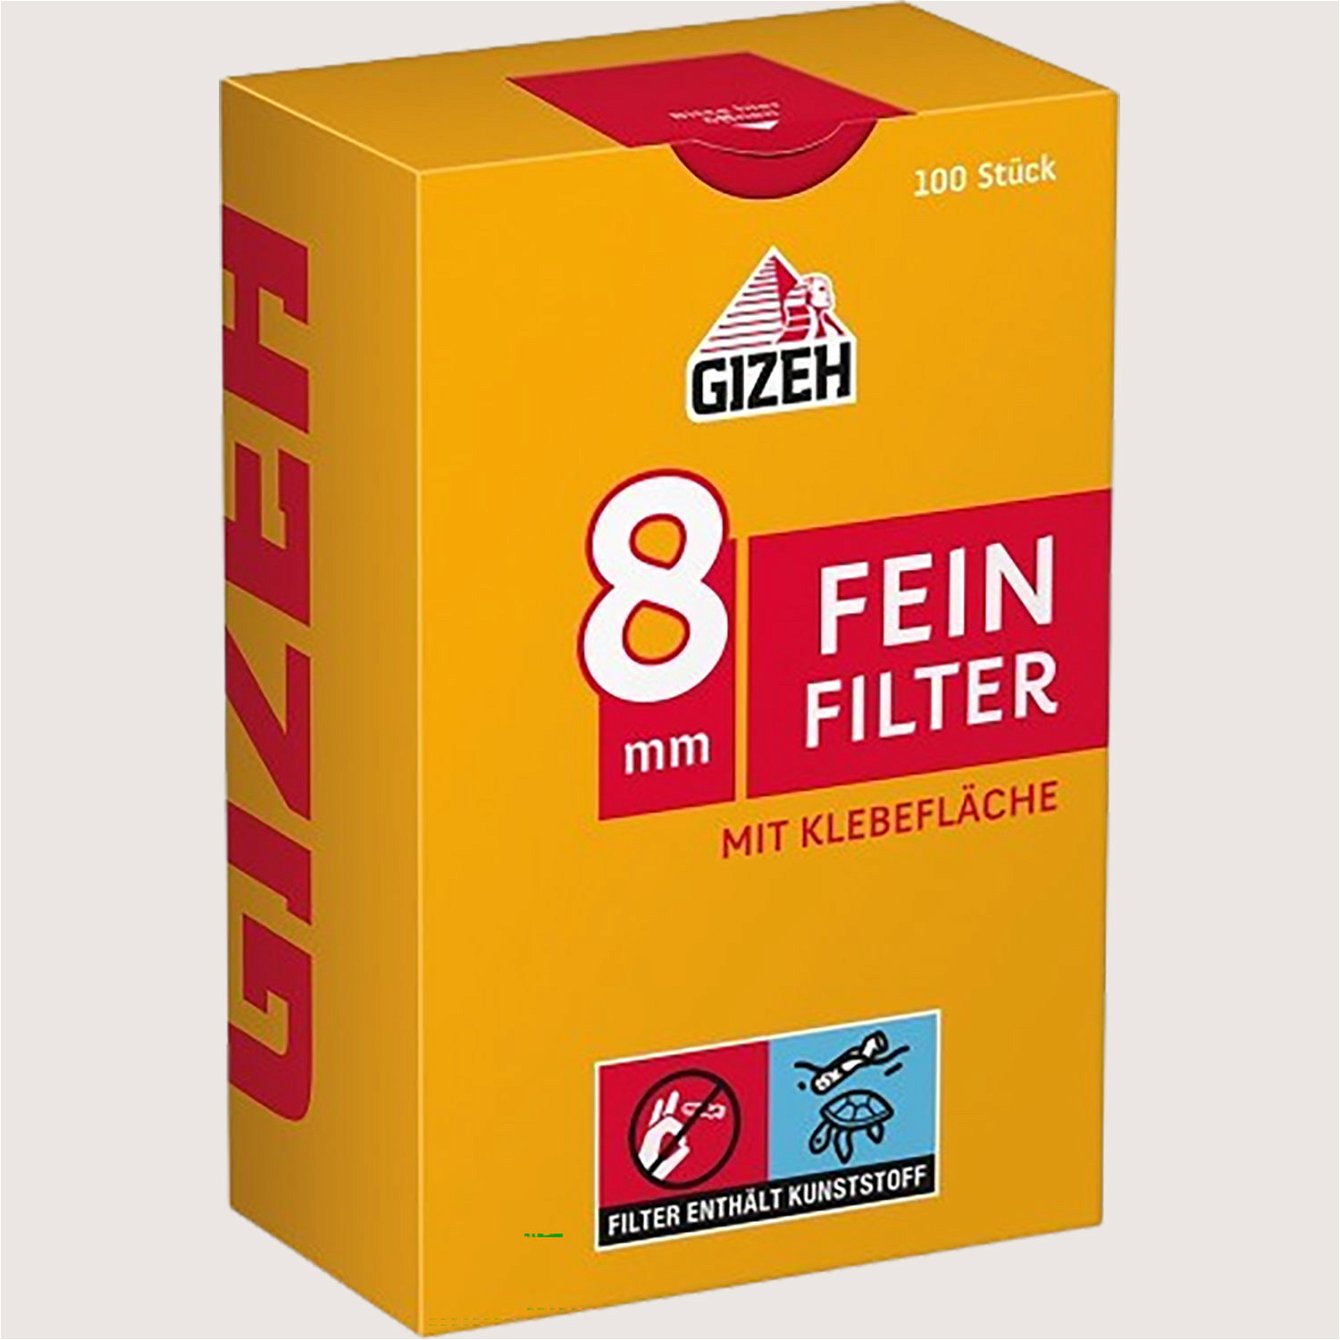 Gizeh Feinfilter 8 mm 100 Filter